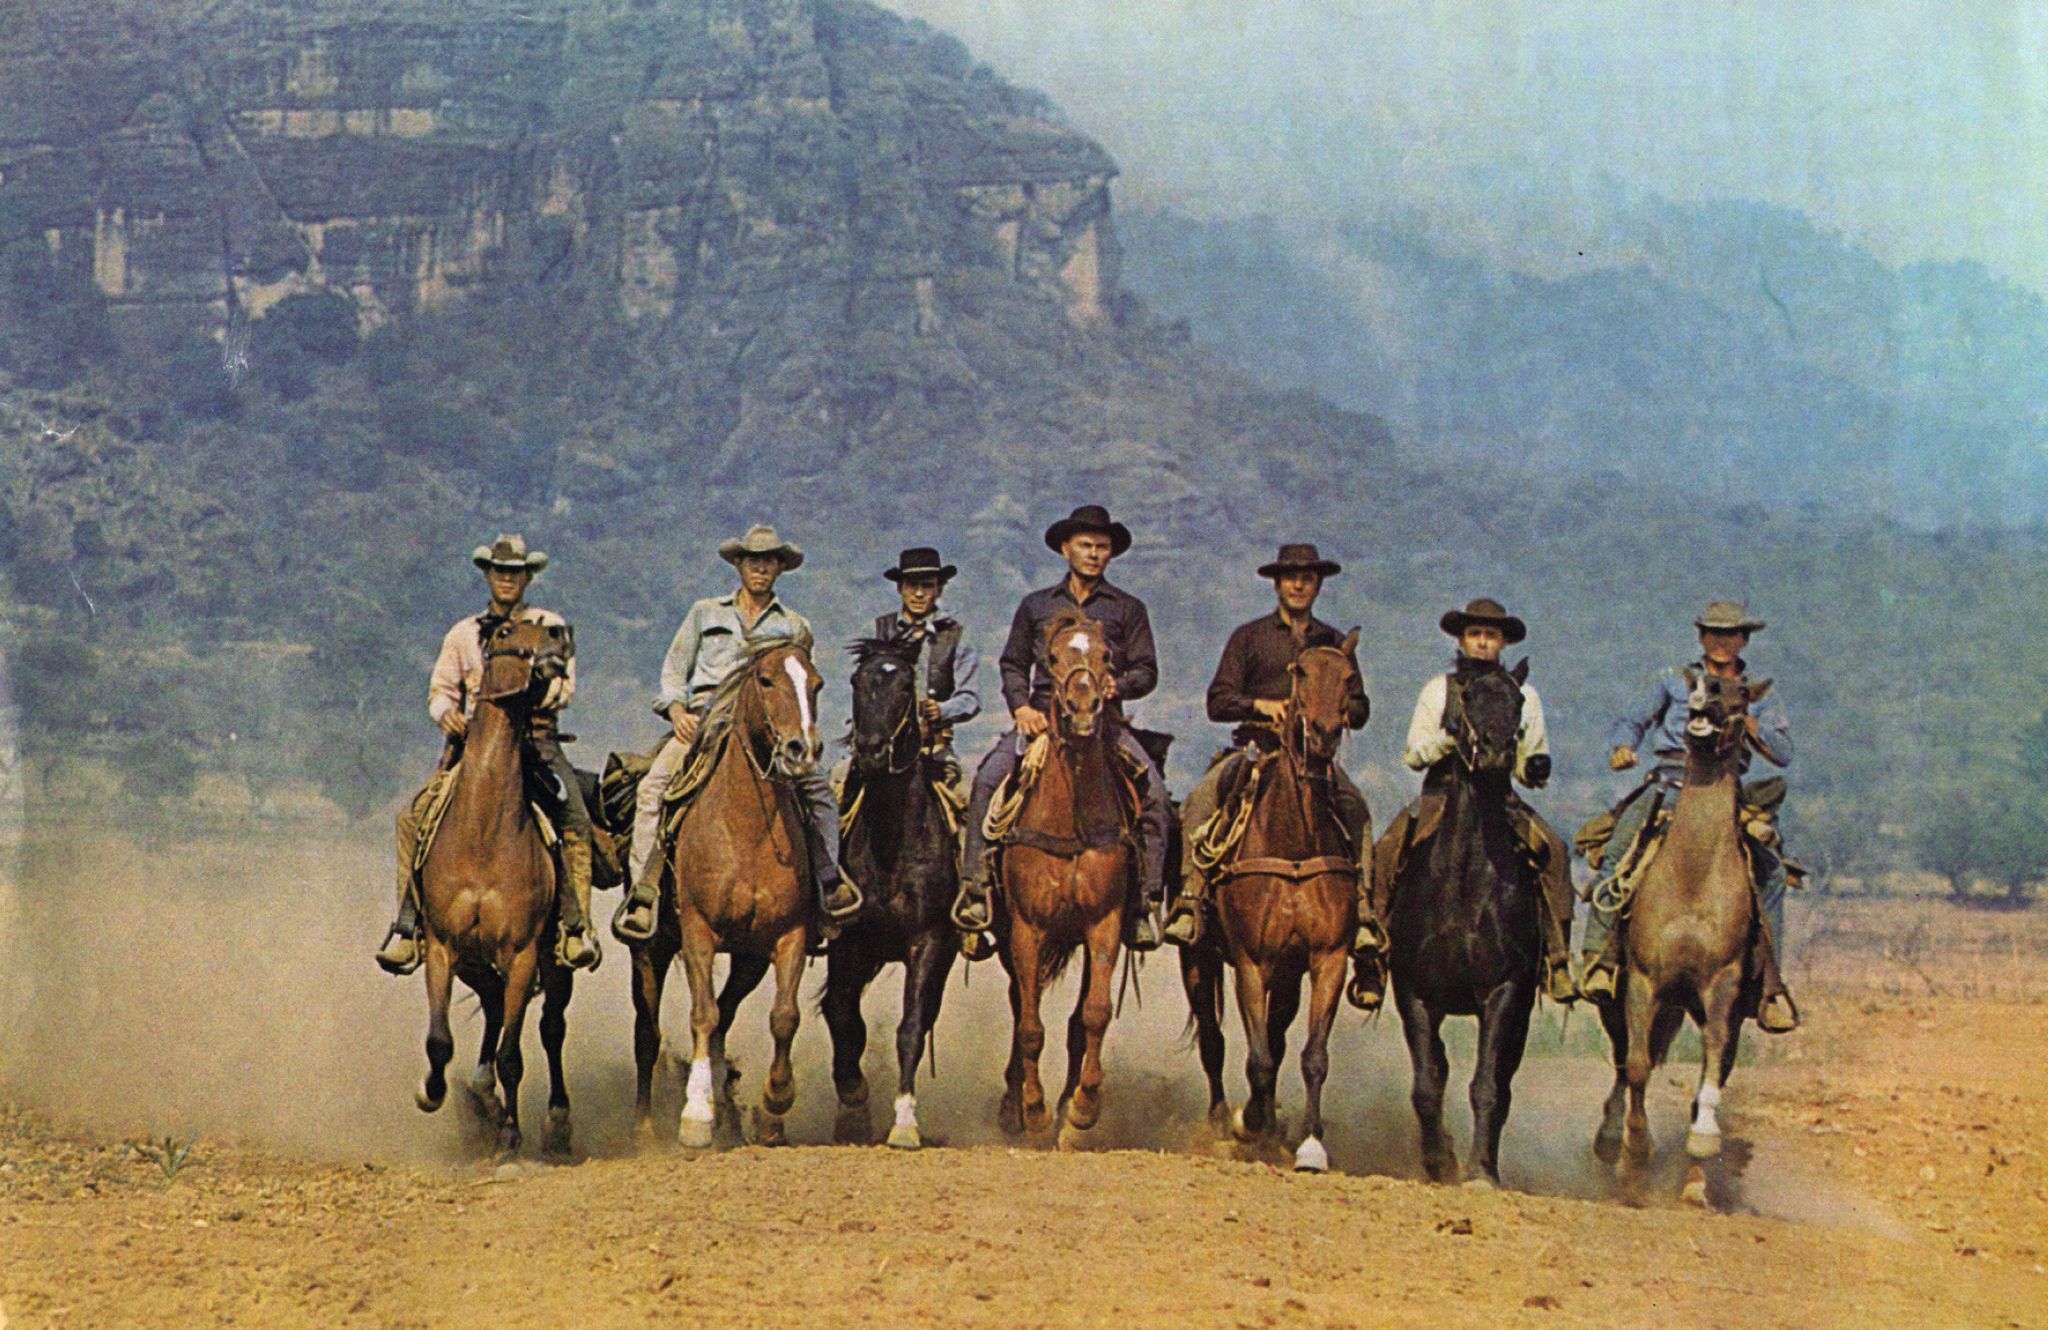 une scène de western (les Sept Mercenaires de John Sturges, 1960)